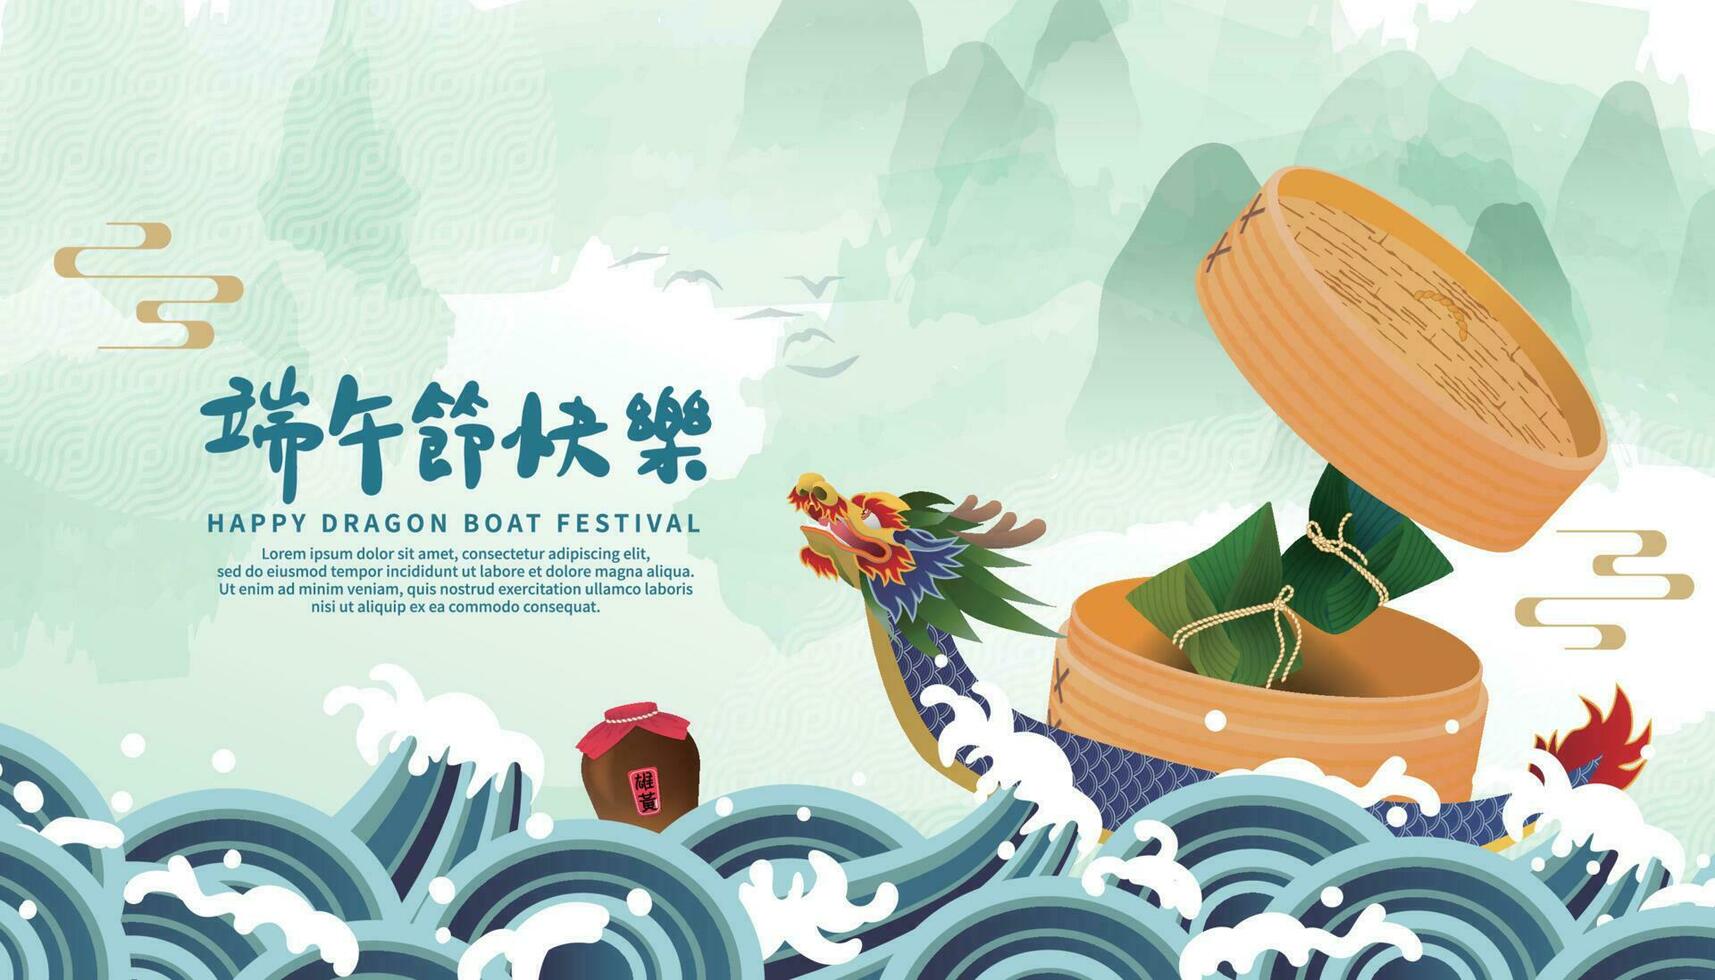 continuar barco festival temática saludo tarjeta con continuar barco y arroz albóndigas, chino caracteres para continuar barco festival deseos y realgar vino vector